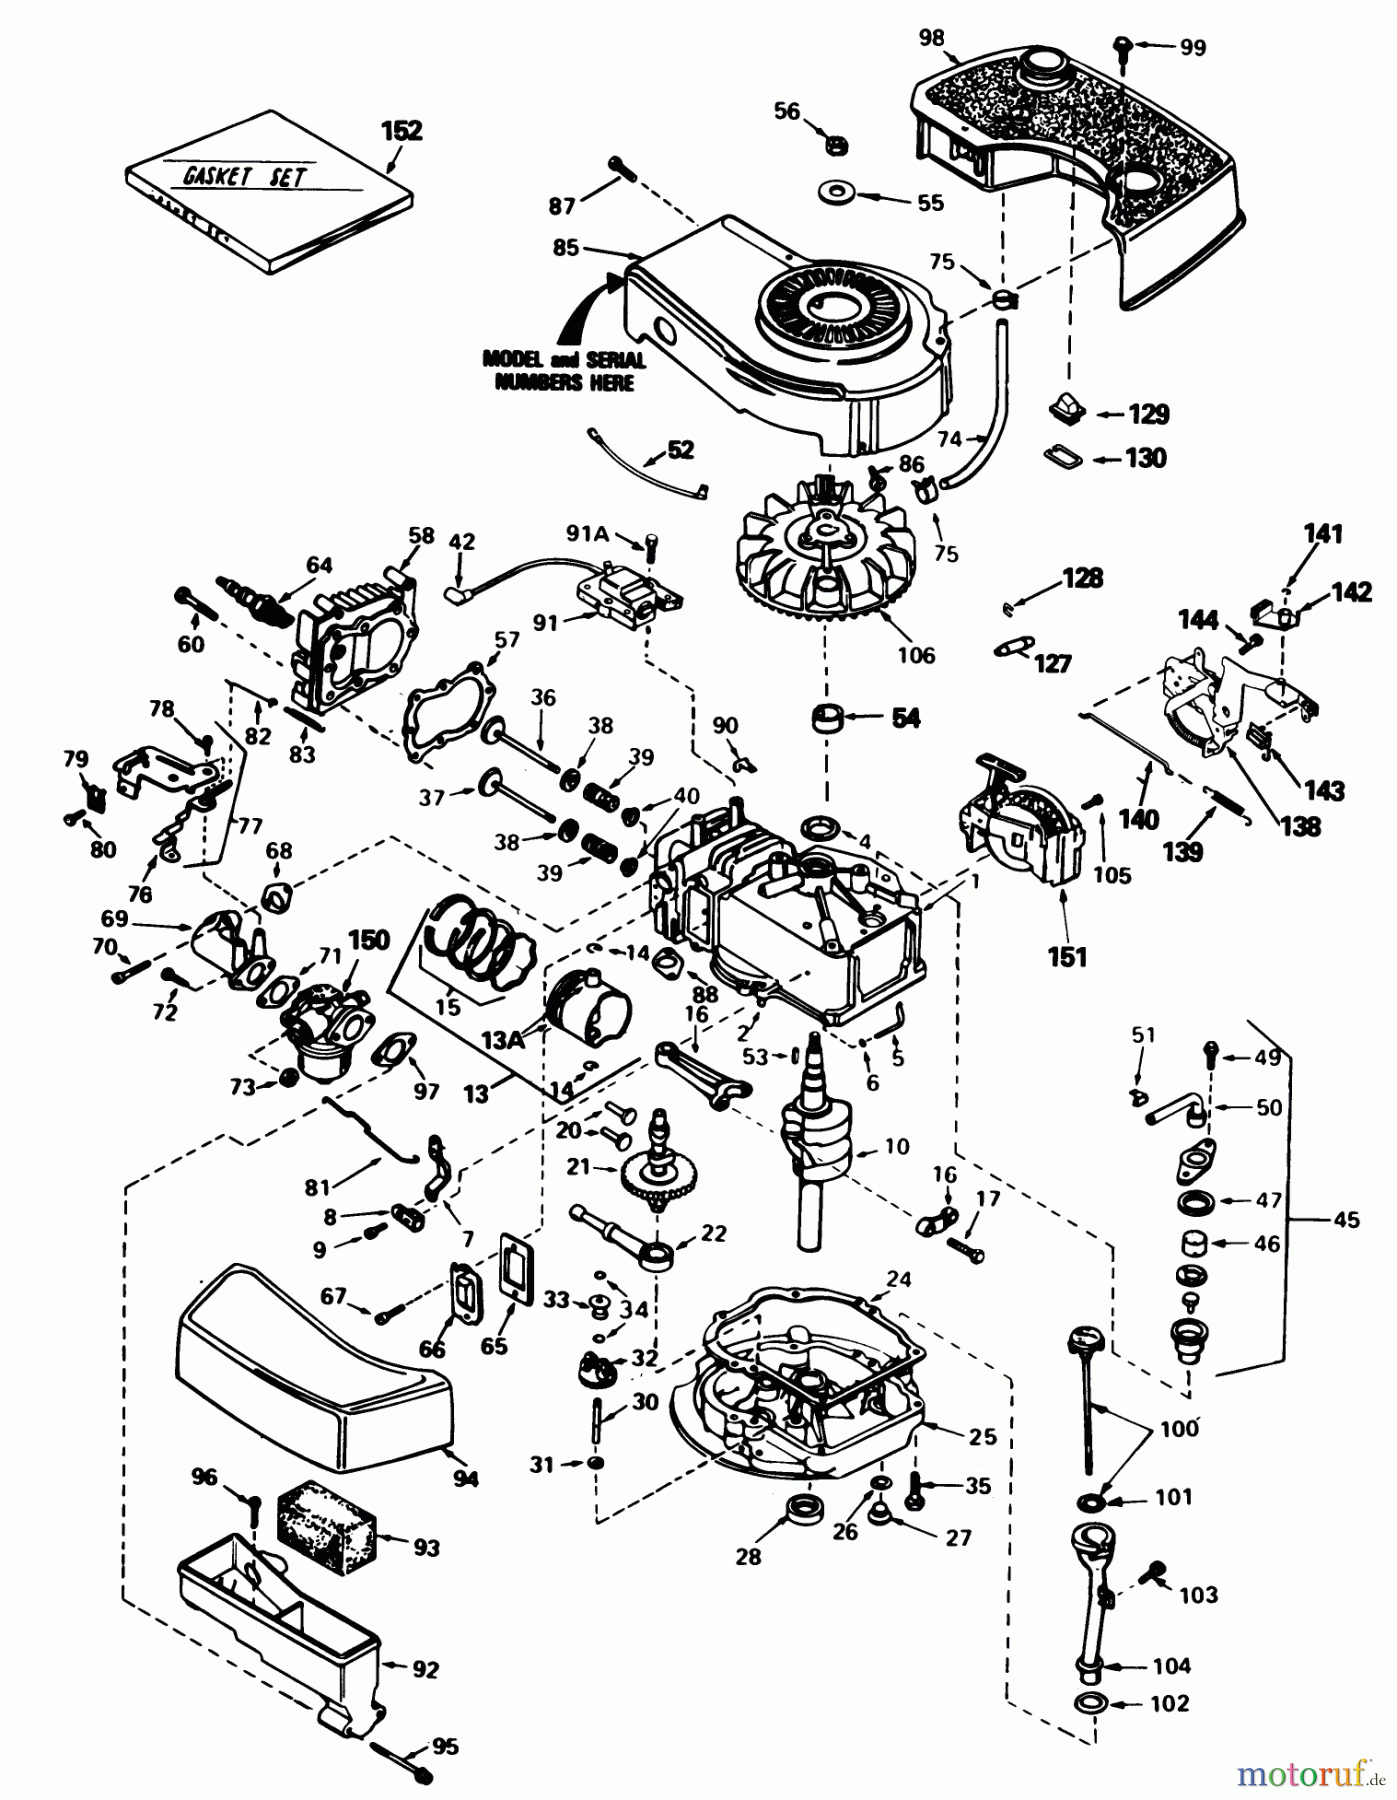  Toro Neu Mowers, Walk-Behind Seite 1 16771 - Toro Lawnmower, 1983 (3000001-3999999) ENGINE TECUMSEH MODEL TNT100-10085E